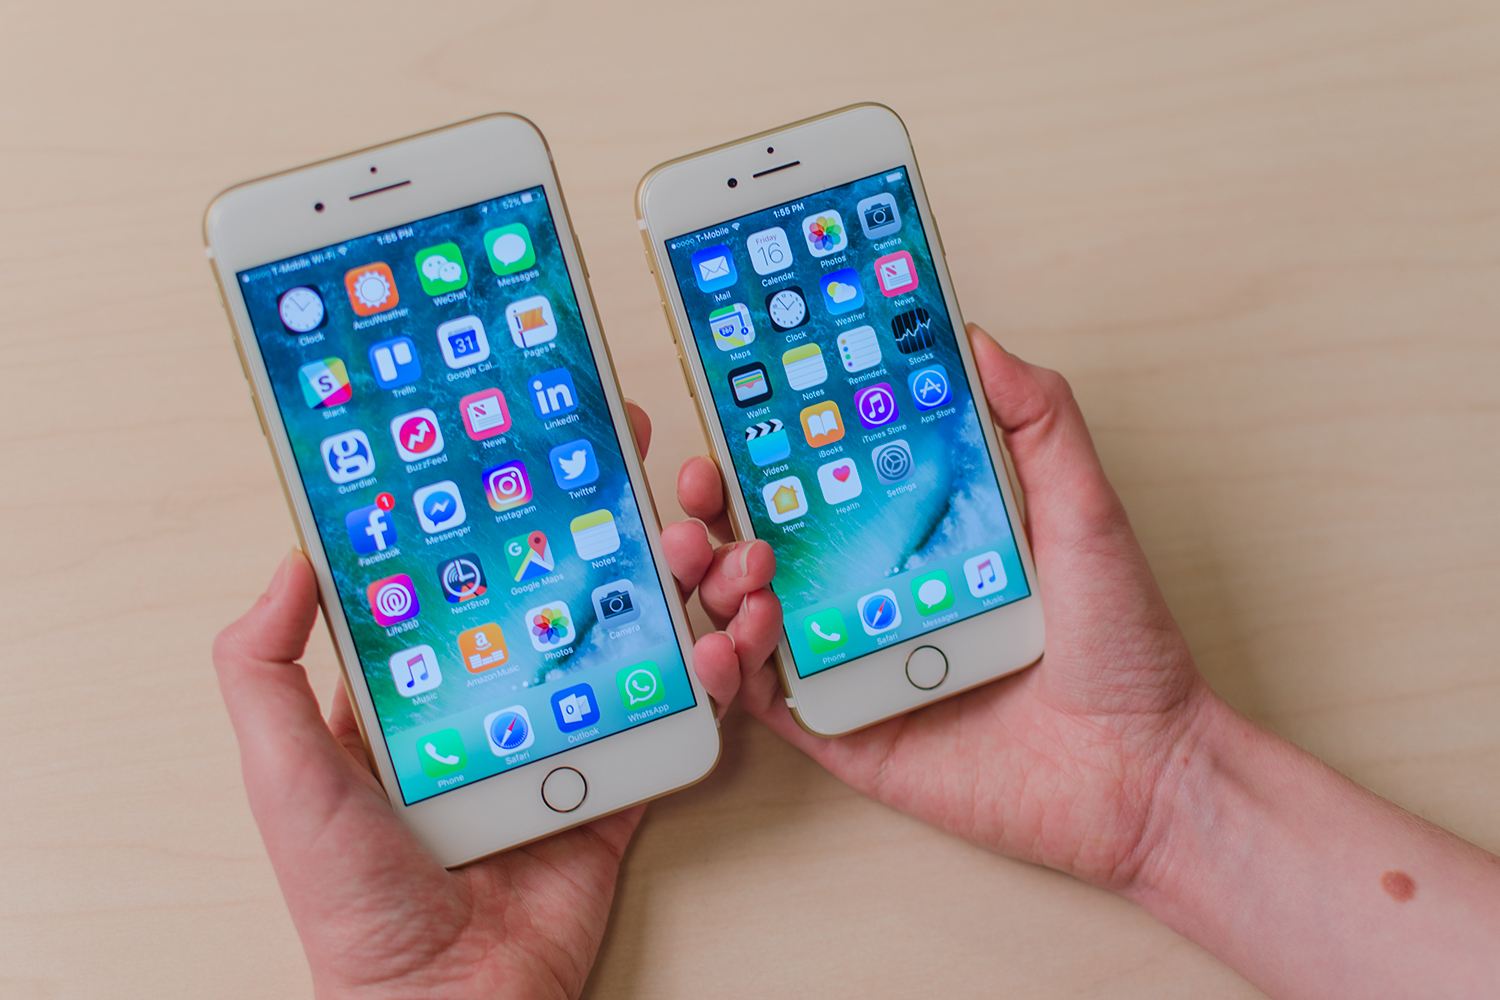 Maryanne Jones Berg Vesuvius neef How to reset your iPhone, restart, or fully wipe your data | Digital Trends